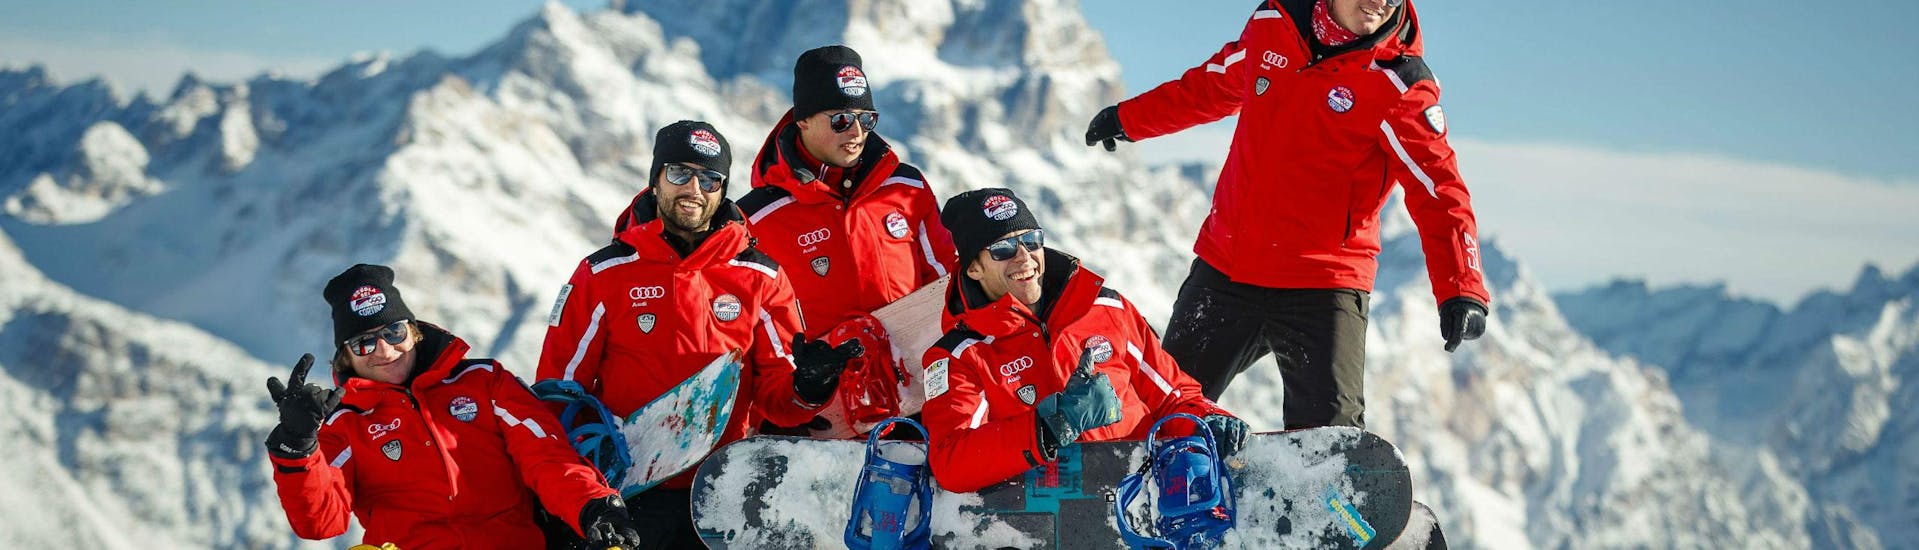 Un gruppo di maestri di snowboard della scuola di sci Scuola Sci Cortina si diverte sulla neve durante una delle lezioni private di snowboard - tutte le età e livelli nel comprensorio sciistico di Cortina d'Ampezzo.